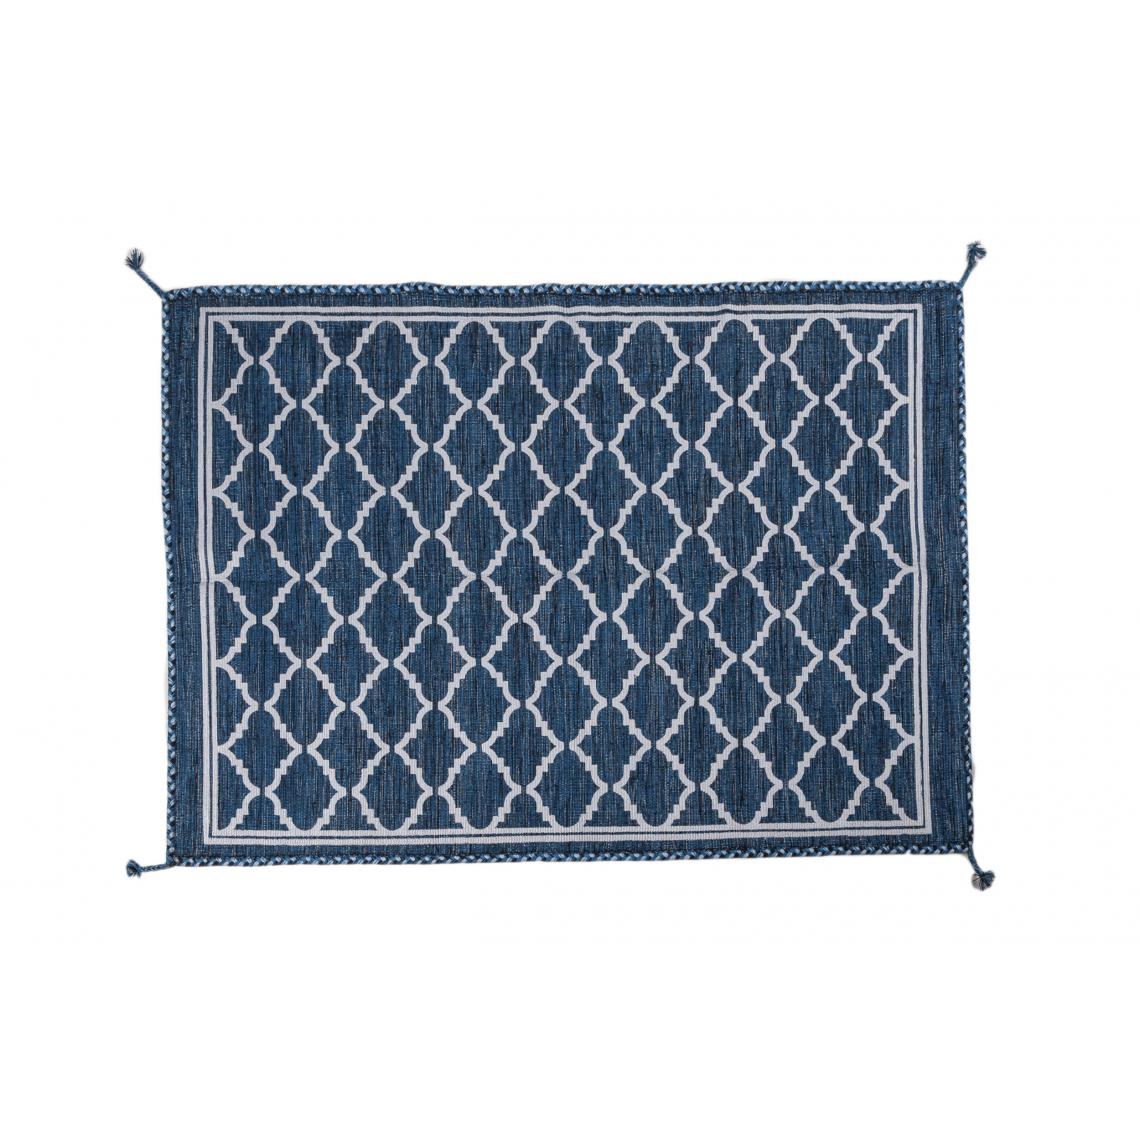 Alter - Tapis moderne Toronto, style kilim, 100% coton, bleu, 230x160cm - Tapis